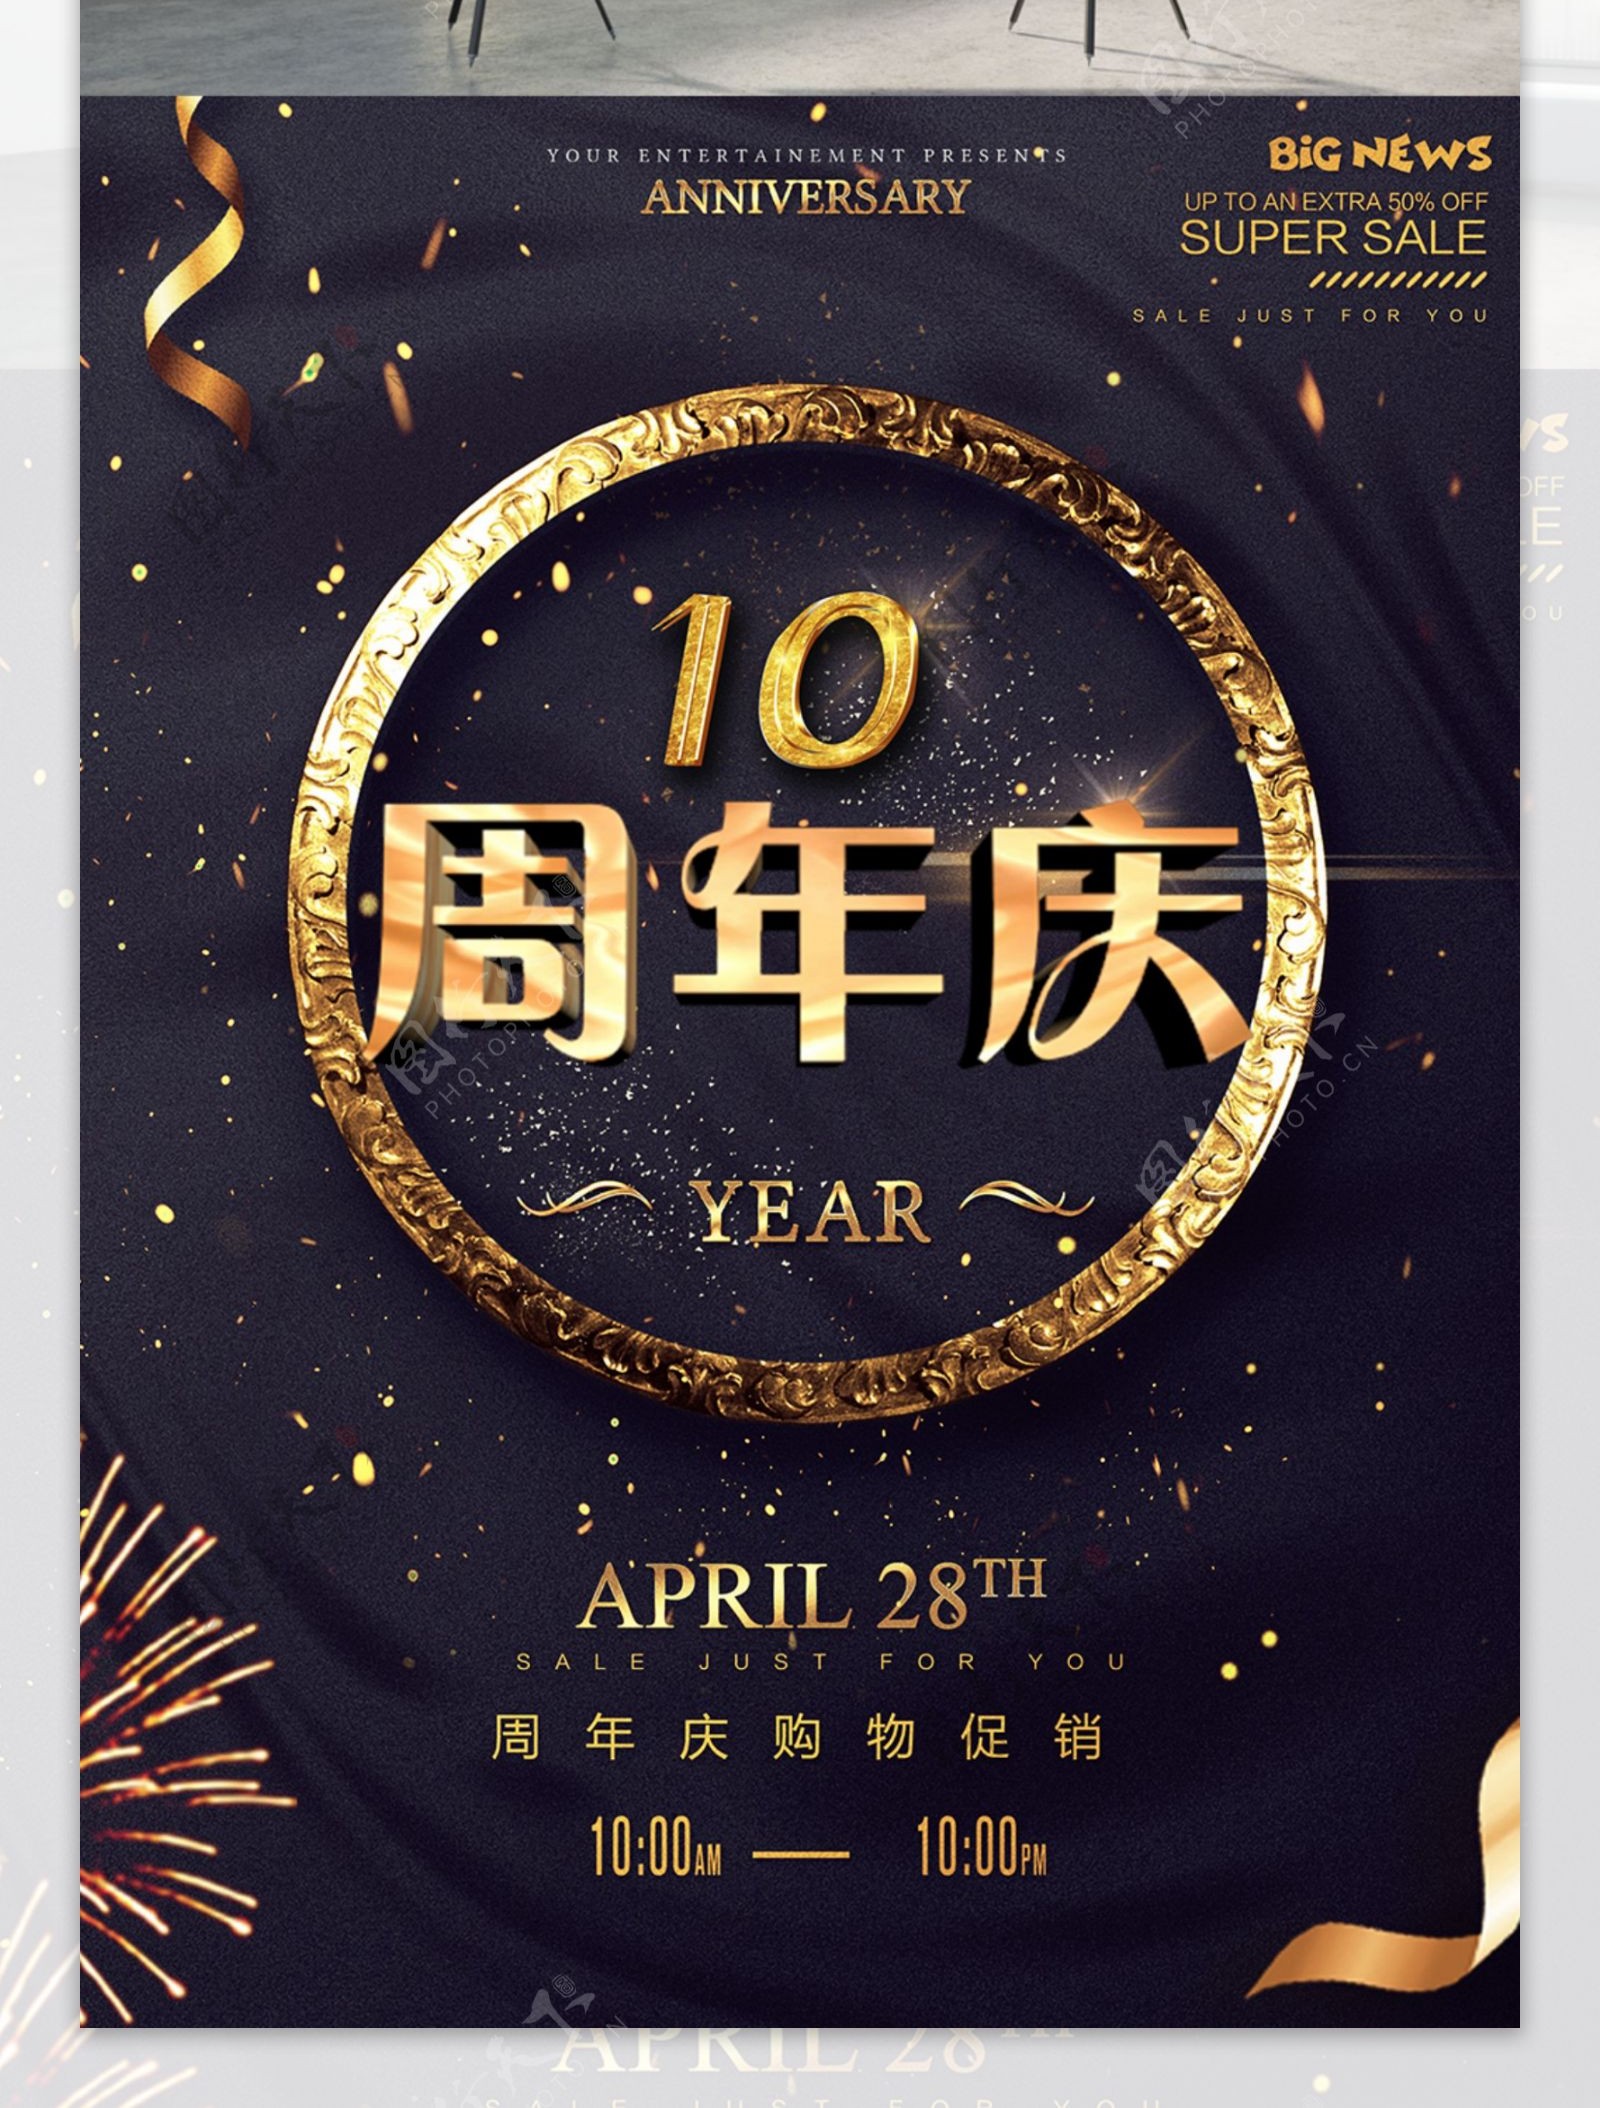 10周年庆海报设计